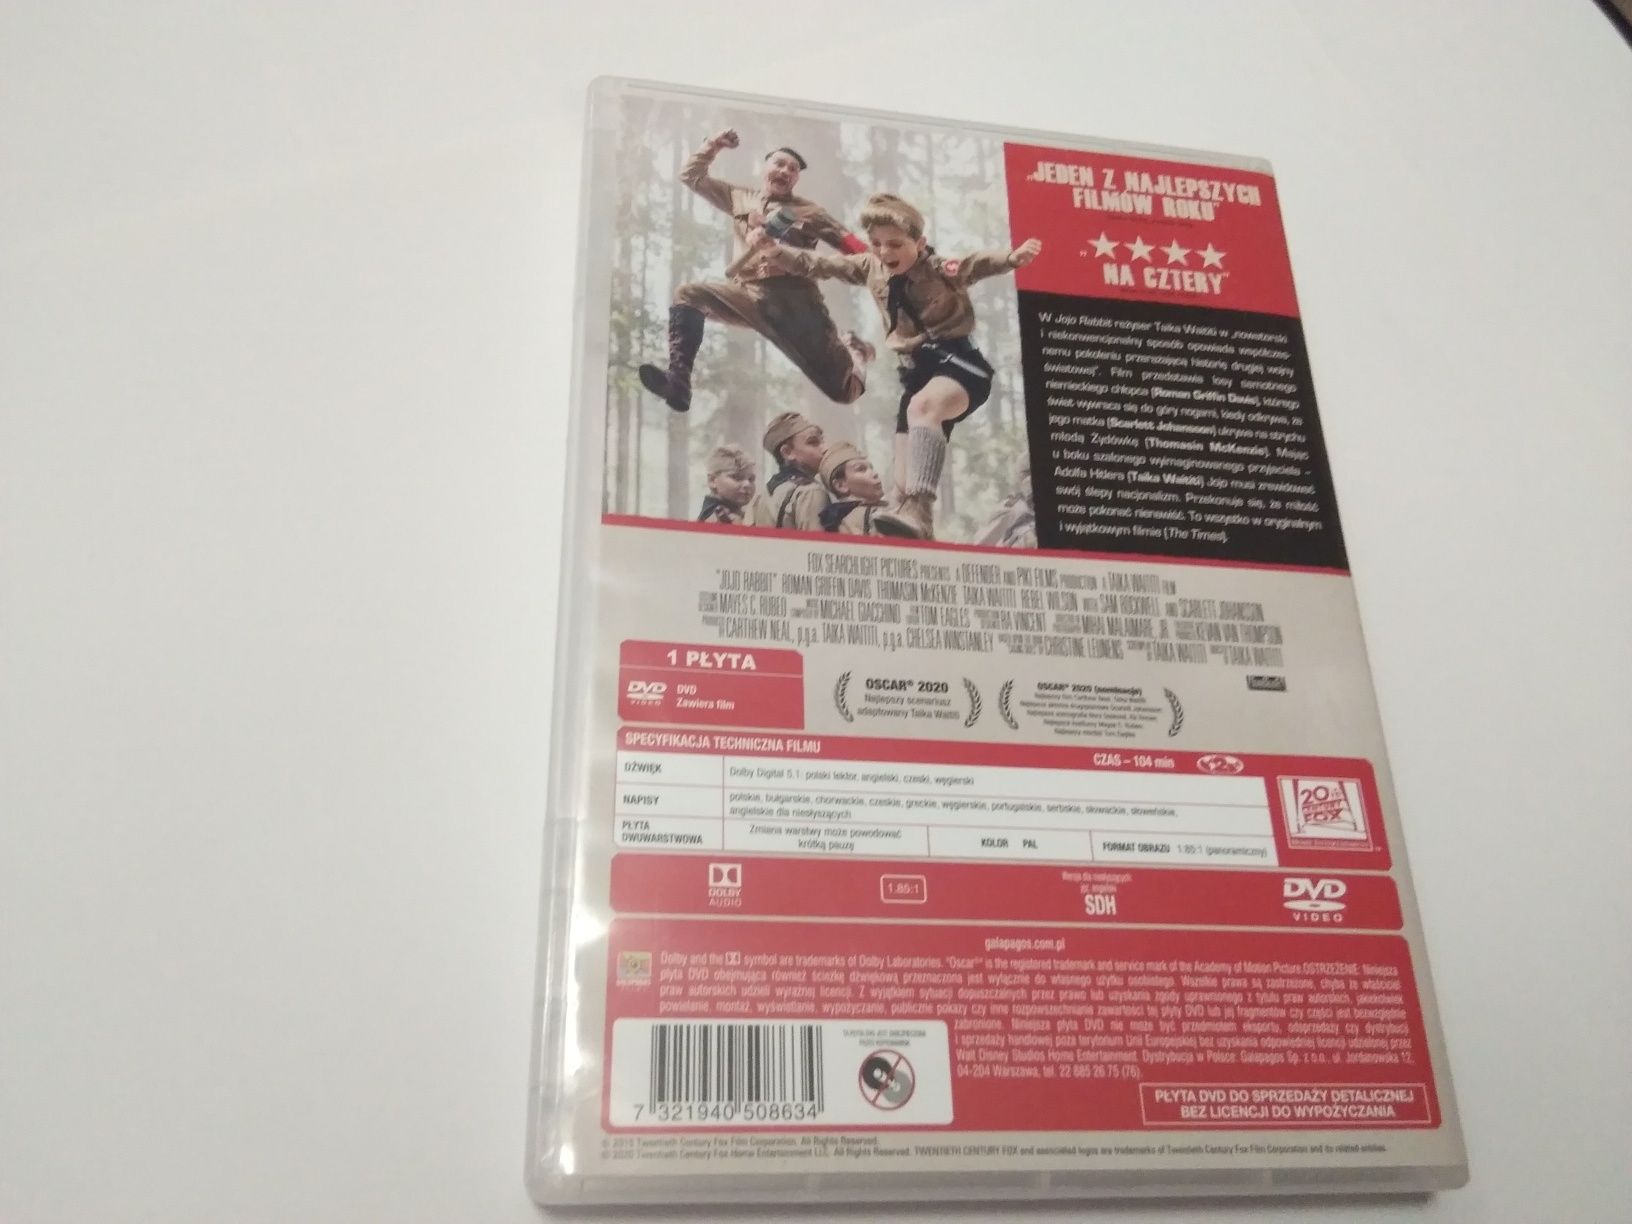 Film DVD Jojo Rabbit